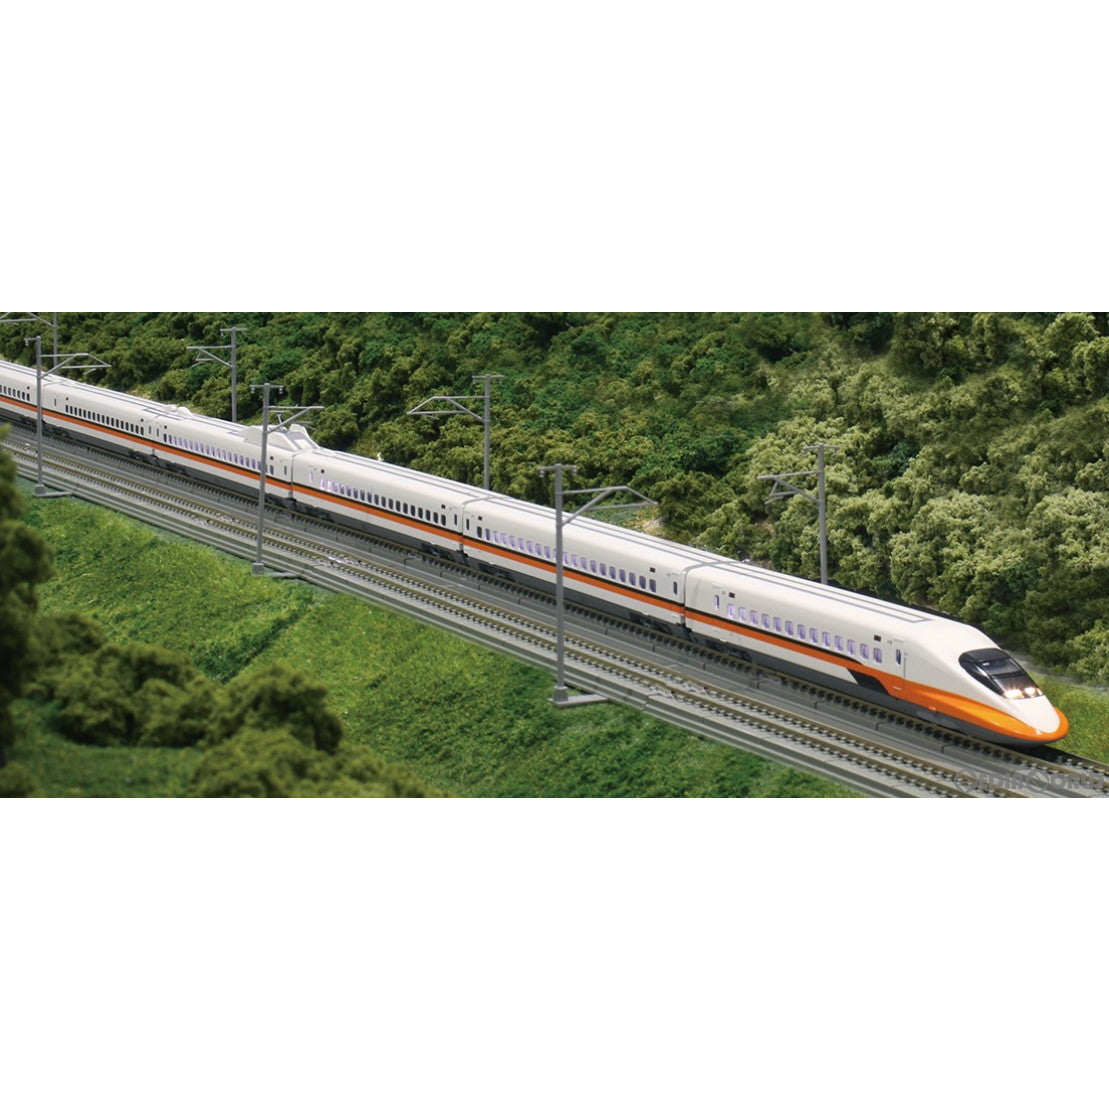 【新品即納】[RWM]10-1617 台湾高鐵700T 6両増結セット(動力無し) Nゲージ 鉄道模型 KATO(カトー)(20230527)